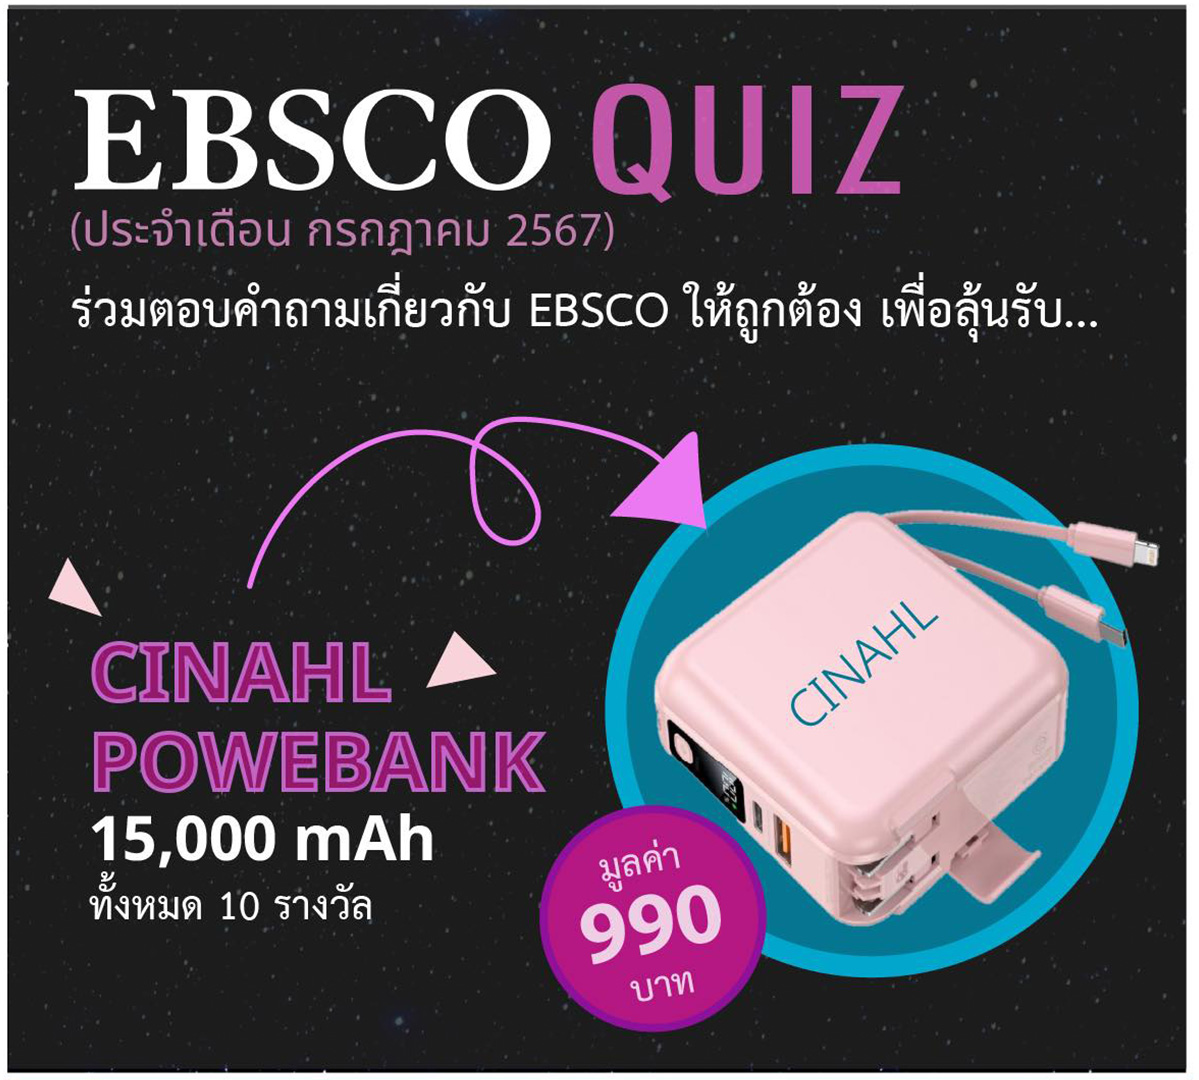 👩🏻‍💻“พี่พร้อม” ขอเชิญชวนนักศึกษา อาจารย์ และบุคลากรของมหาวิทยาลัยศิลปากรเข้าร่วมกิจกรรม EBSCO Quiz (ประจำเดือน กรกฎาคม 2567)